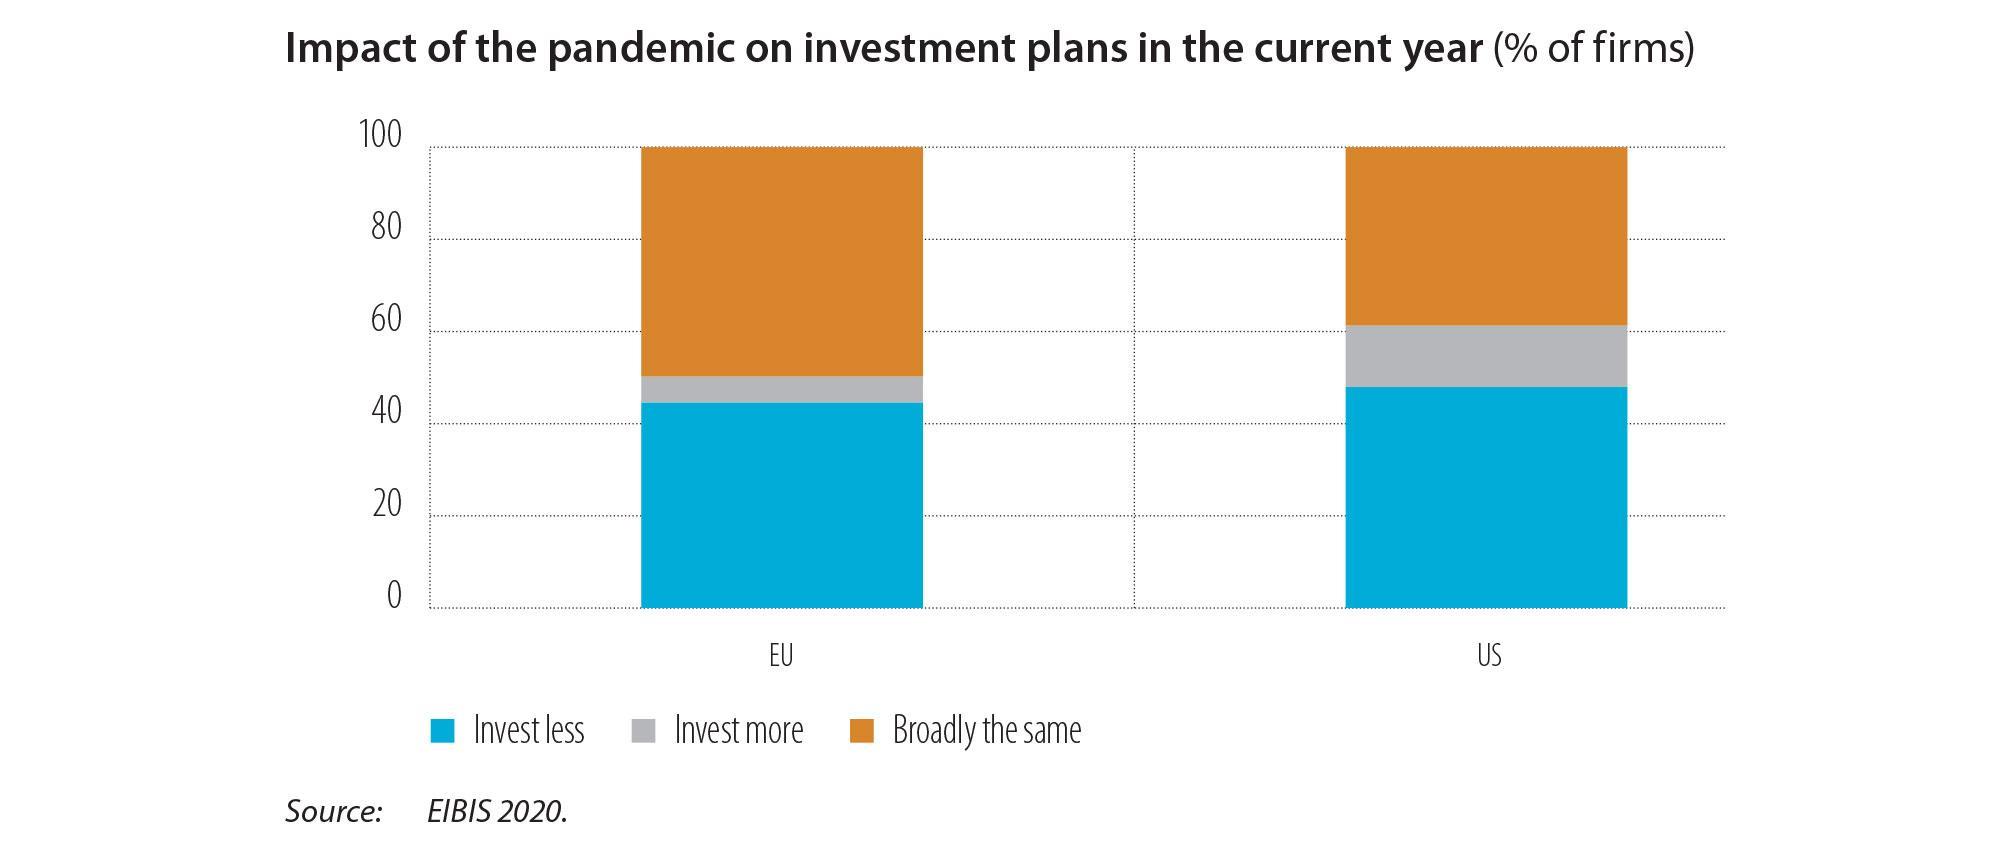 Conséquences de la pandémie sur les projets d’investissement de l’année en cours (% d’entreprises)